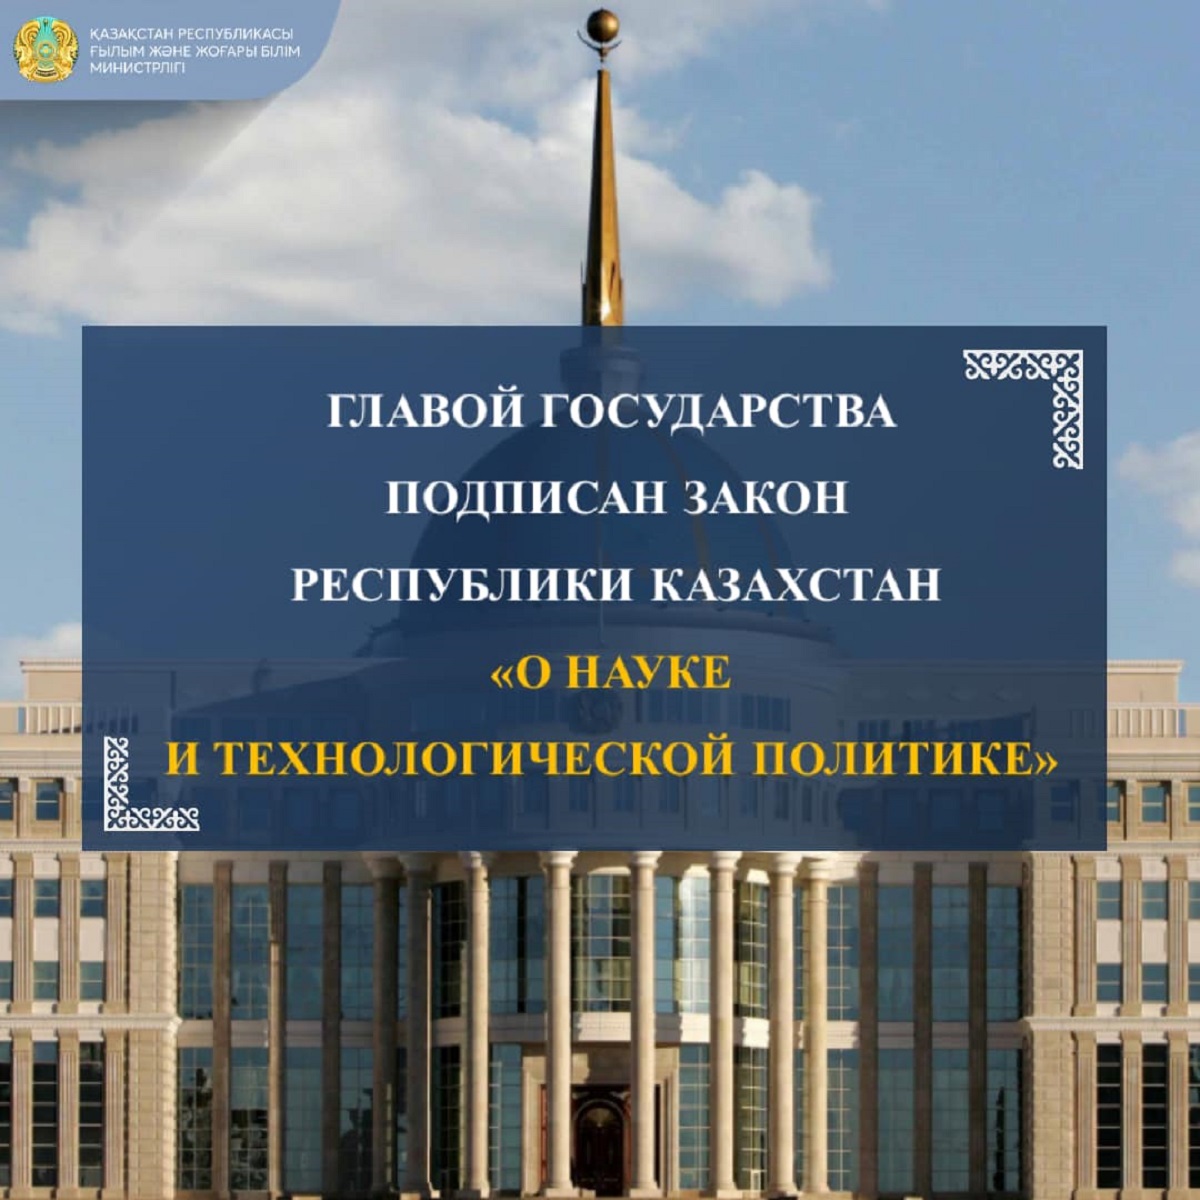 Главой государства подписан Закон Республики Казахстан  «О науке и технологической политике»